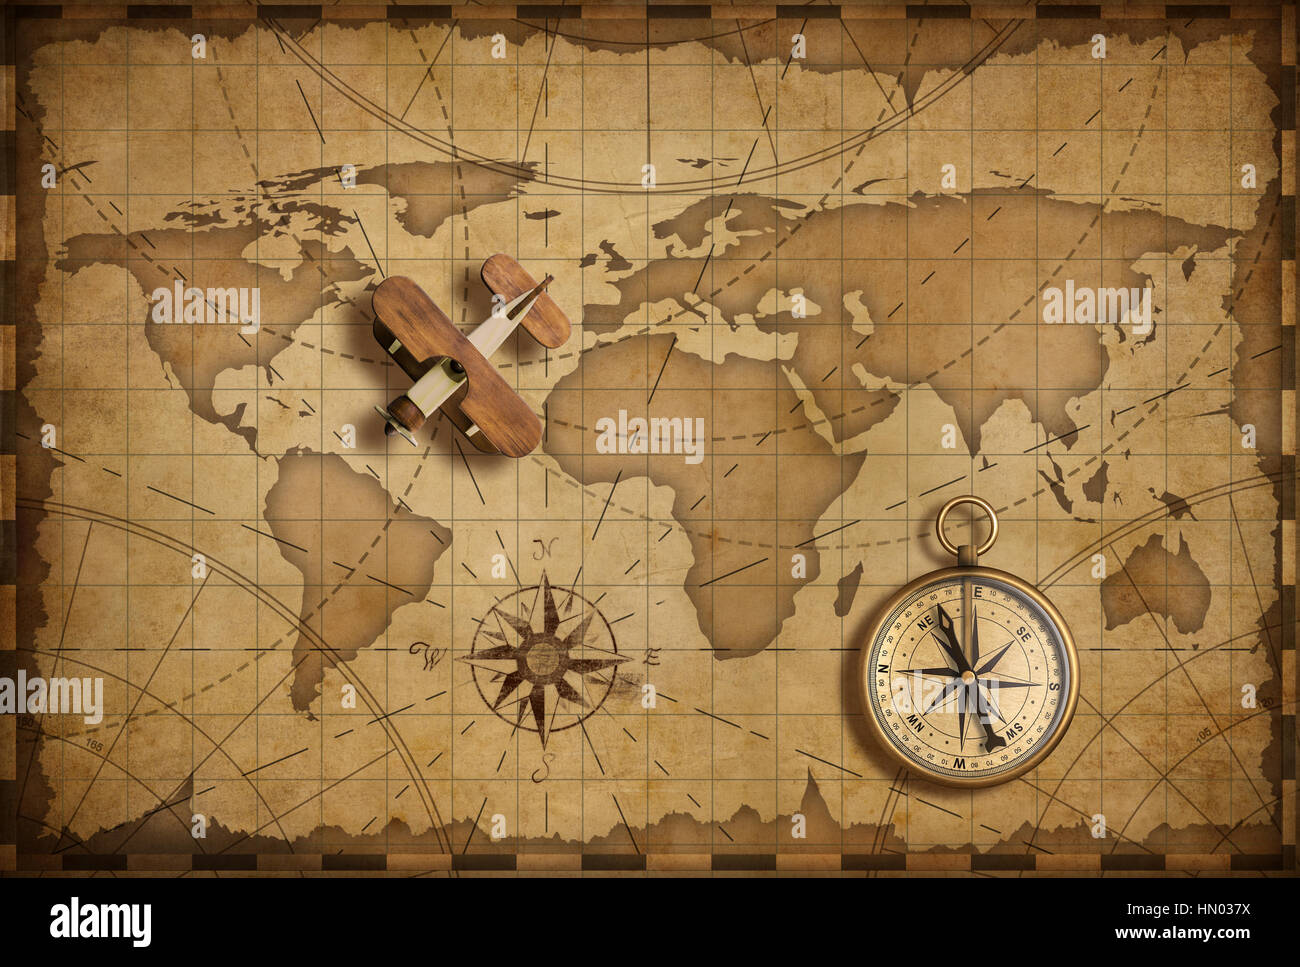 Petit bois avion sur la carte nautique mondiale que les voyages, l'explorer et de communication concept Banque D'Images